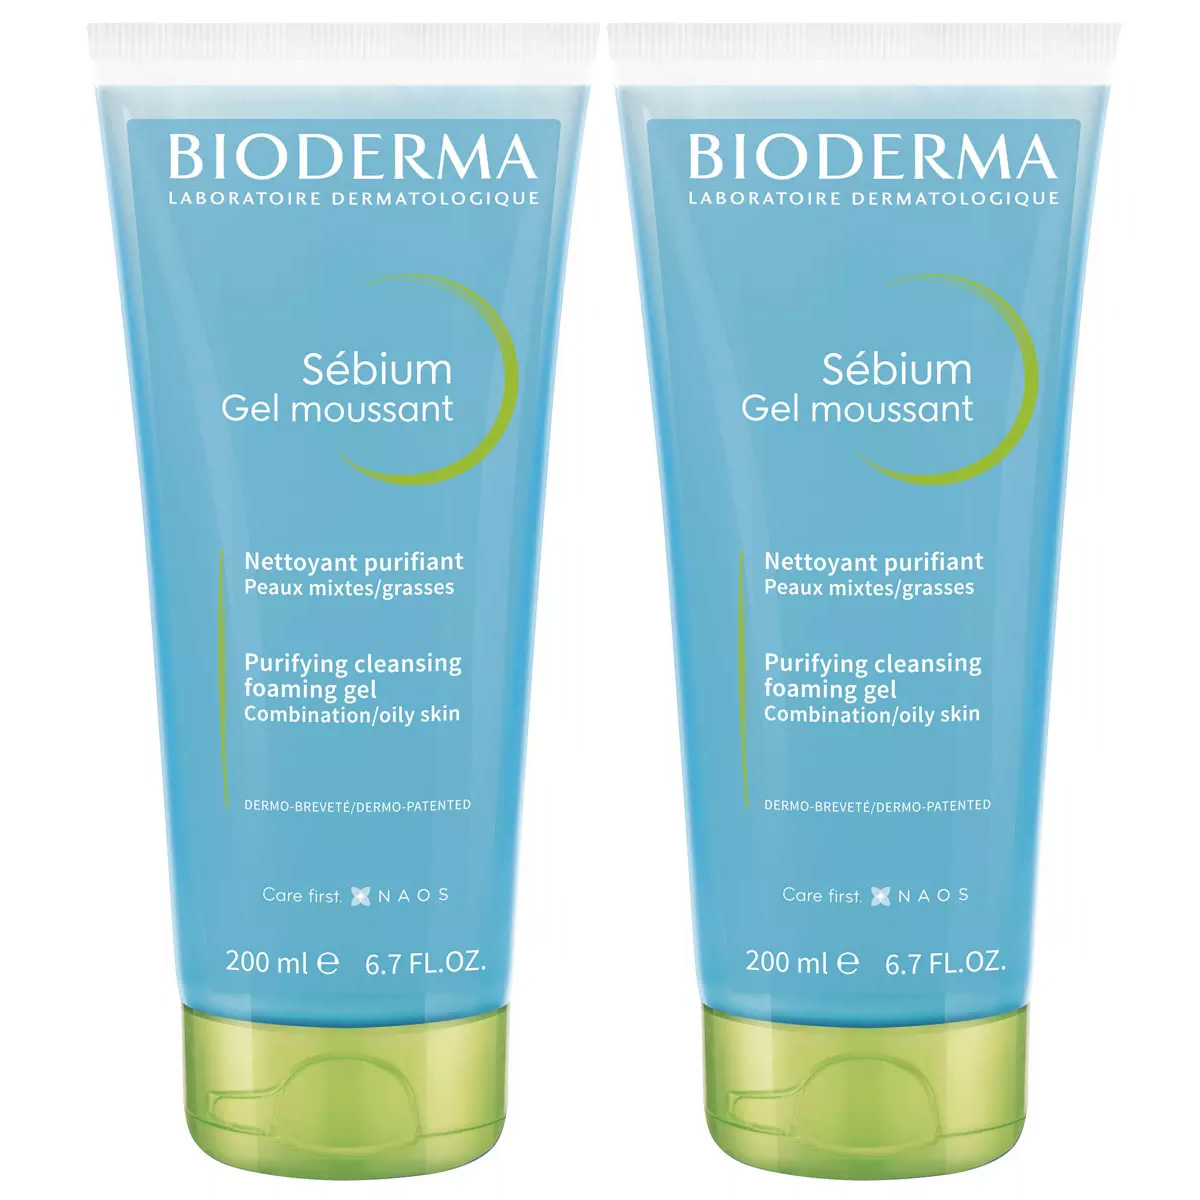 Bioderma Набор: Очищающий гель для жирной и проблемной кожи, без помпы, 2х200 мл (Bioderma, Sebium)